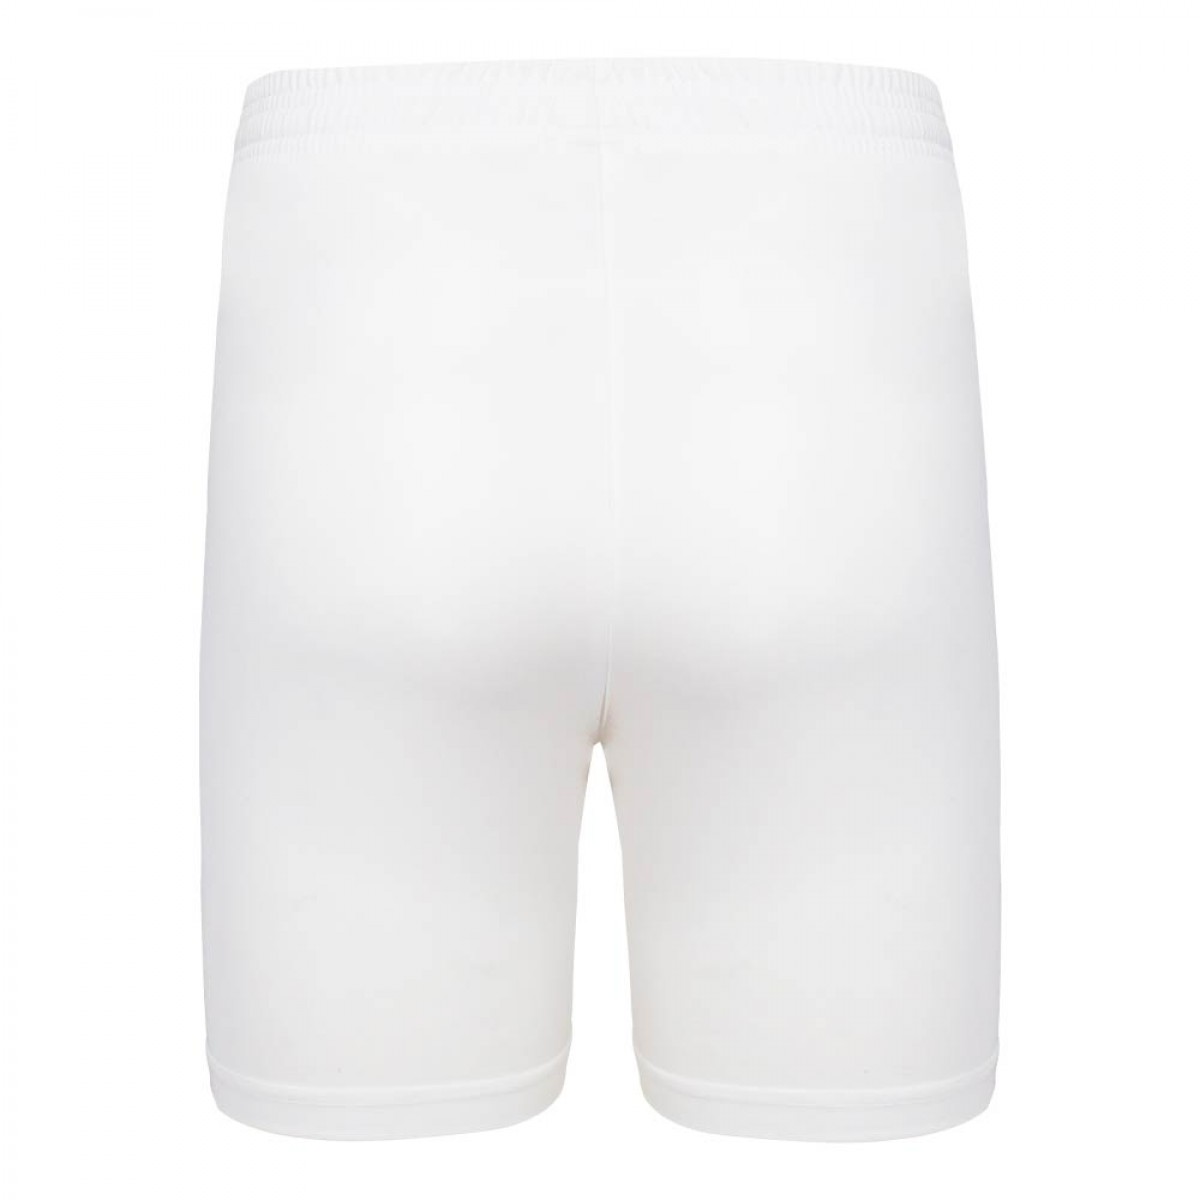 mens-shorts-kms25181